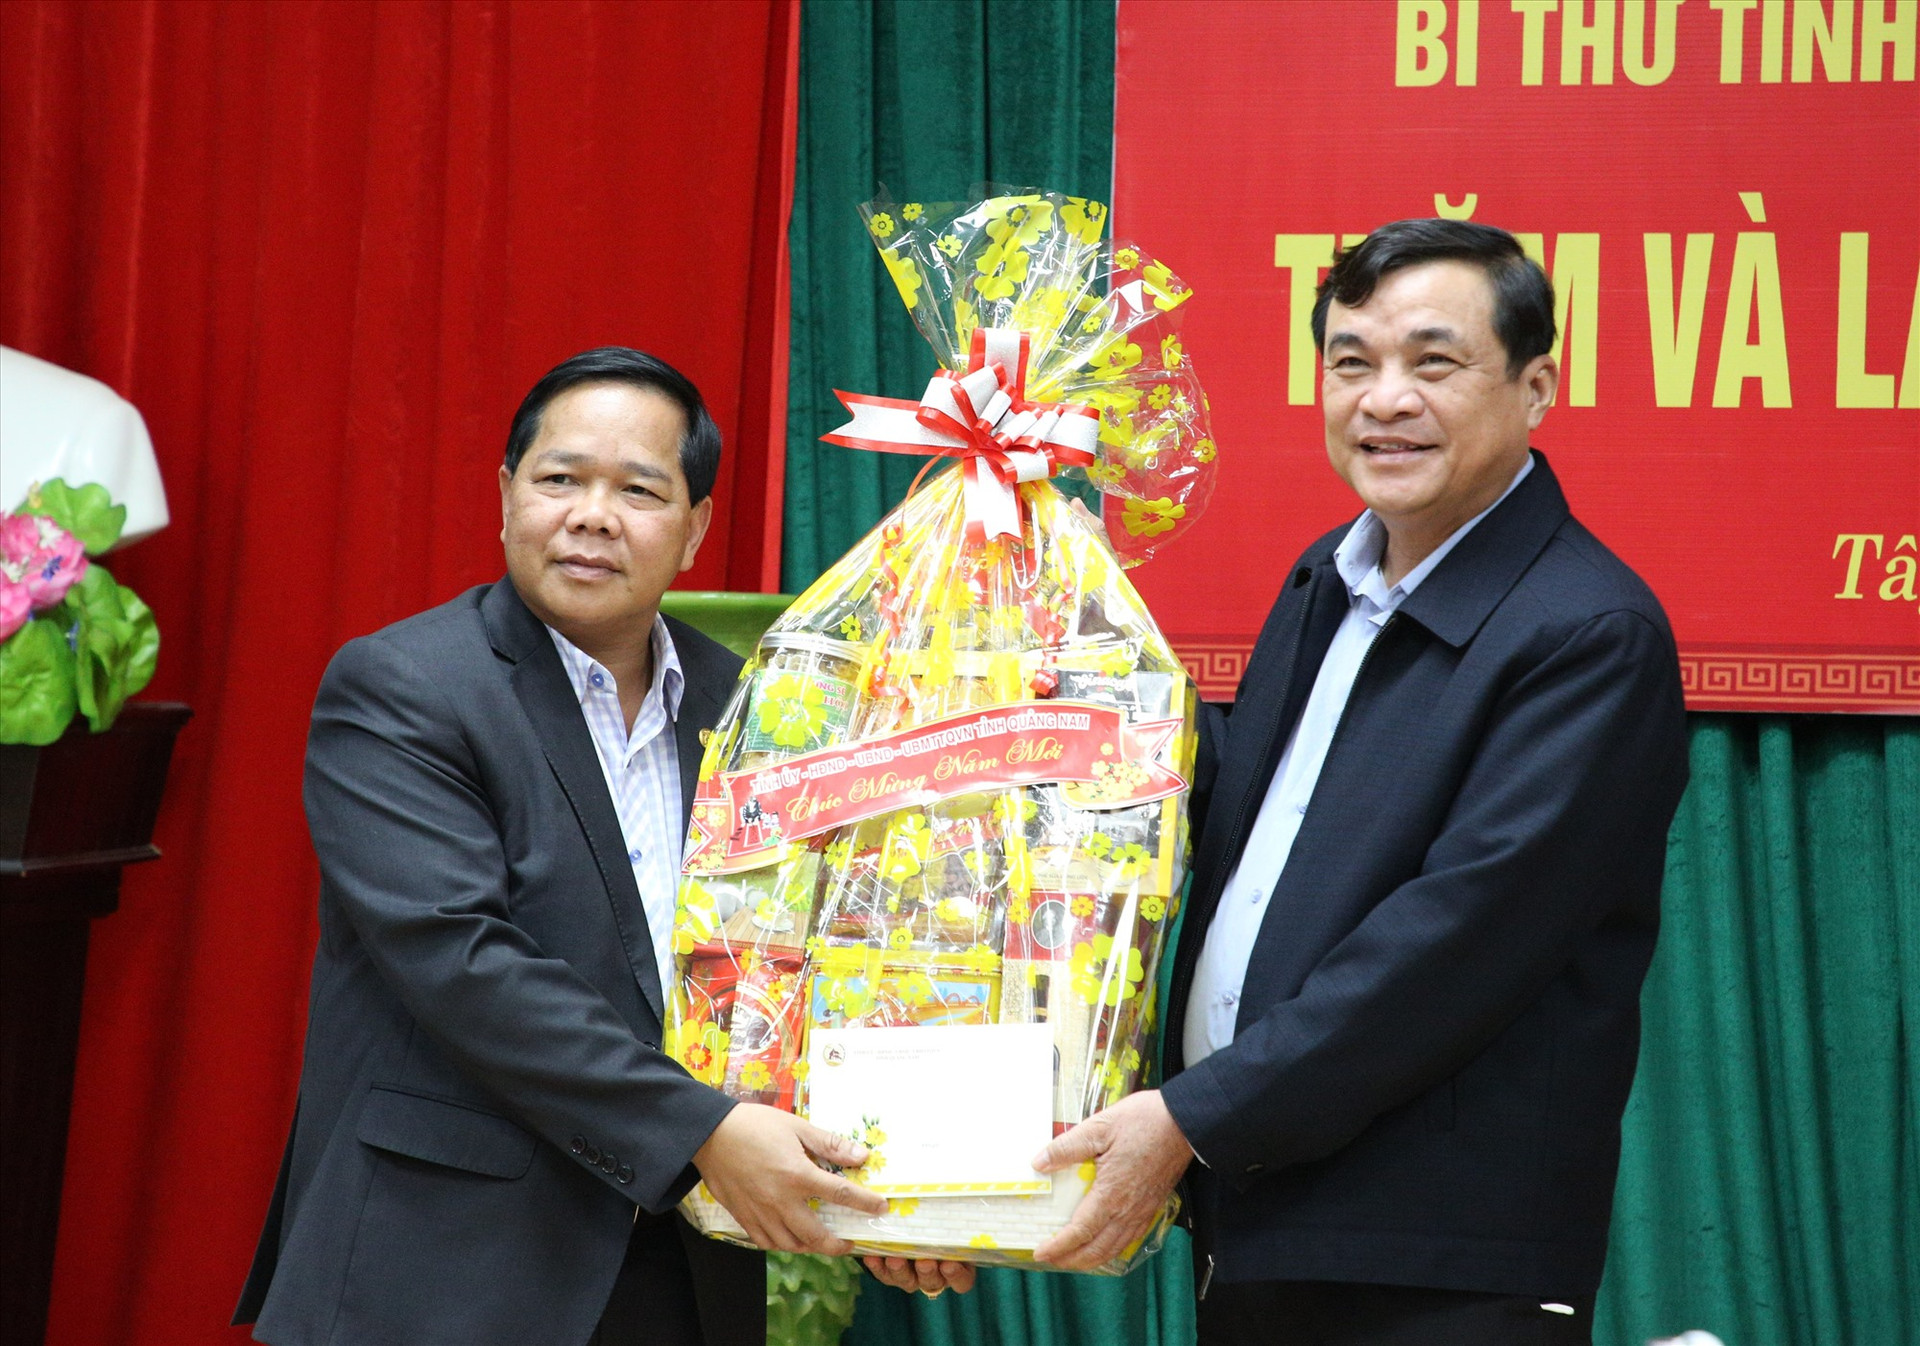 Nhấn chuyến công tác, Bí thư Tỉnh ủy trao quà động viên tết cho chính quyền huyện Tây Giang. Ảnh: A.N